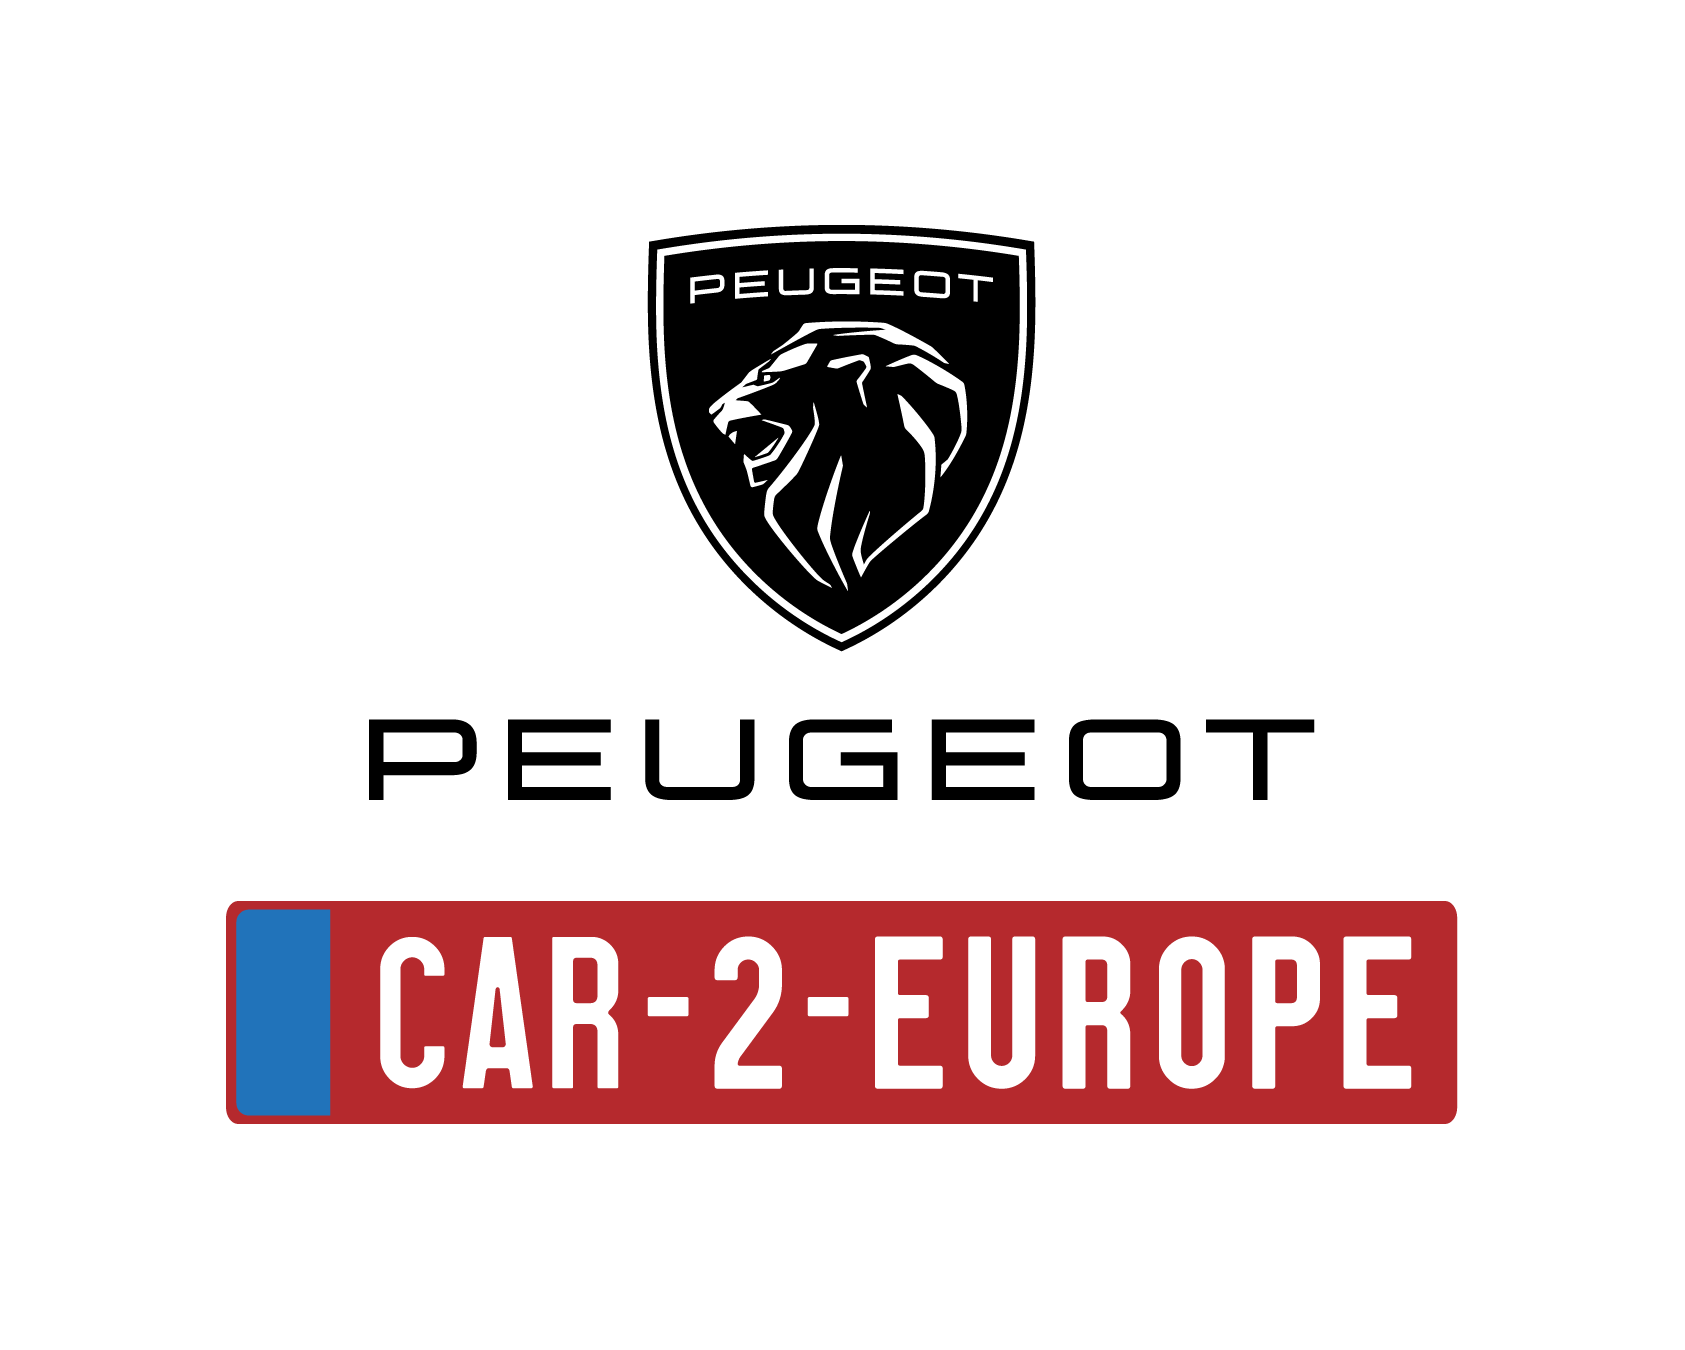 PEUGEOT CAR-2-EUROPE